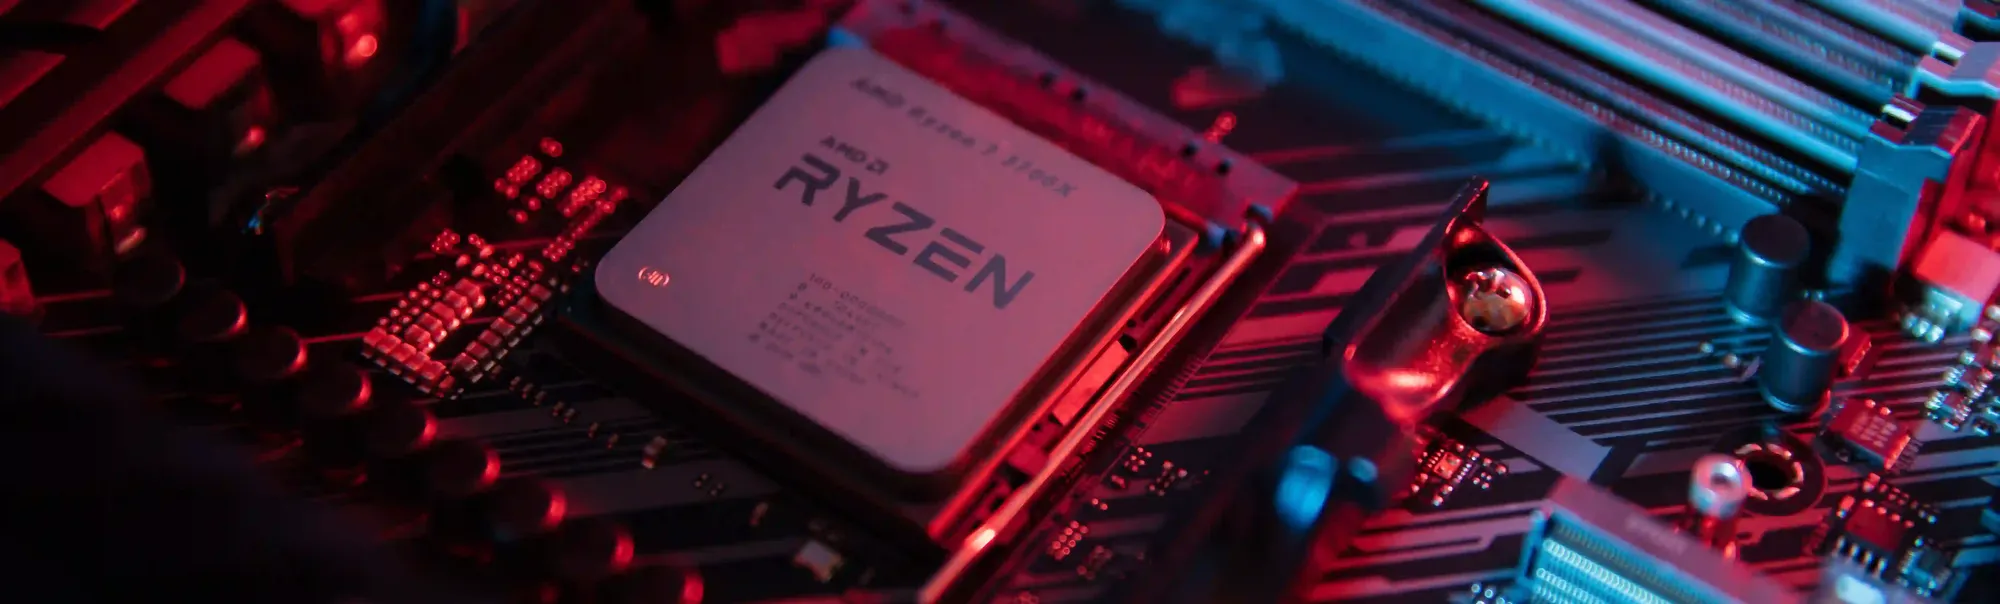 Ryzen 7 5800x: encontre aqui nossa análise sobre o processador